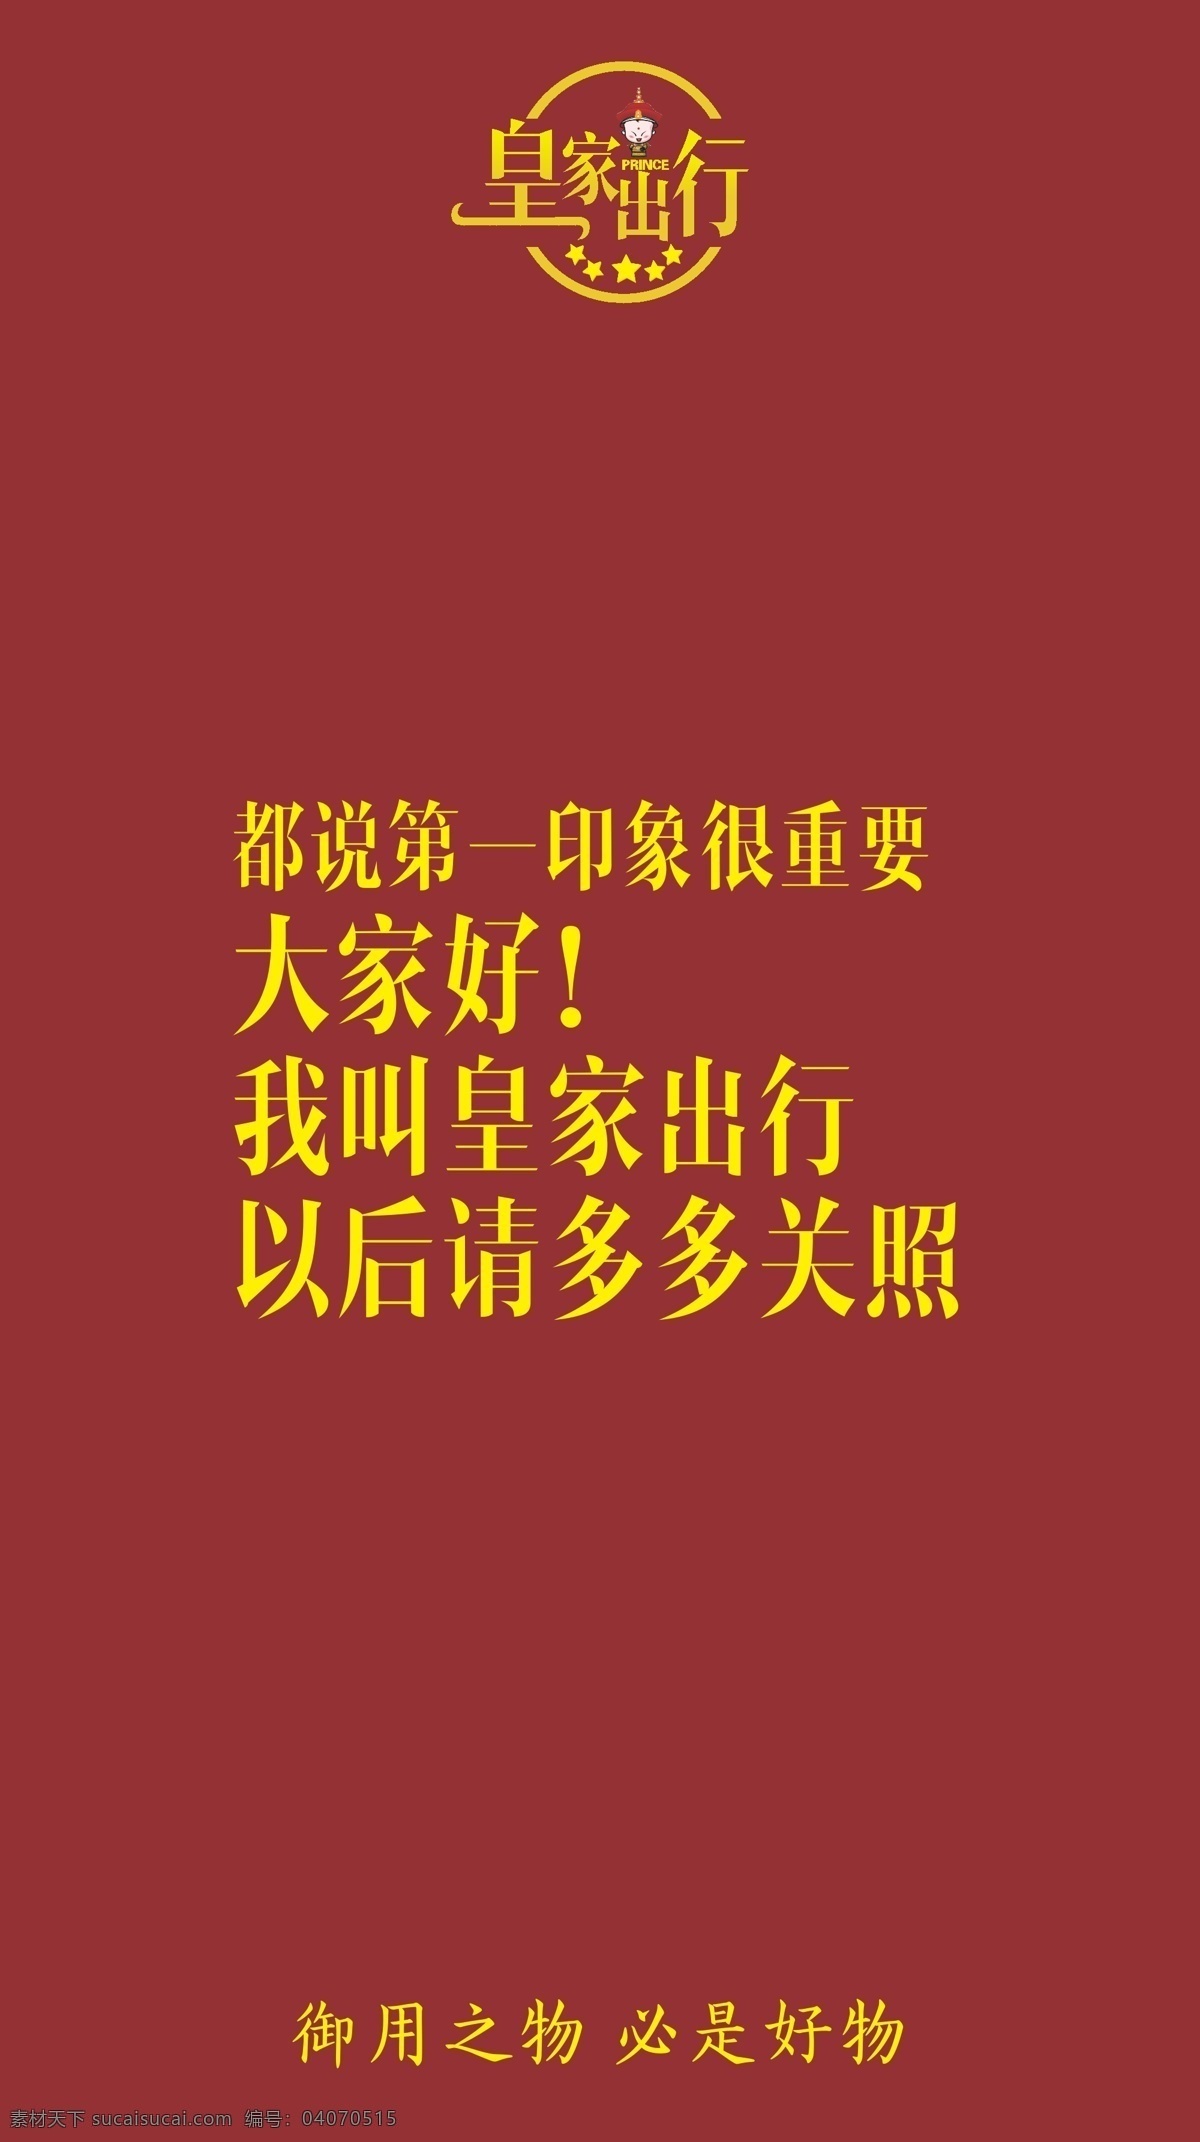 北京 旅游 海报 宣传 广告 平面 手机 出行